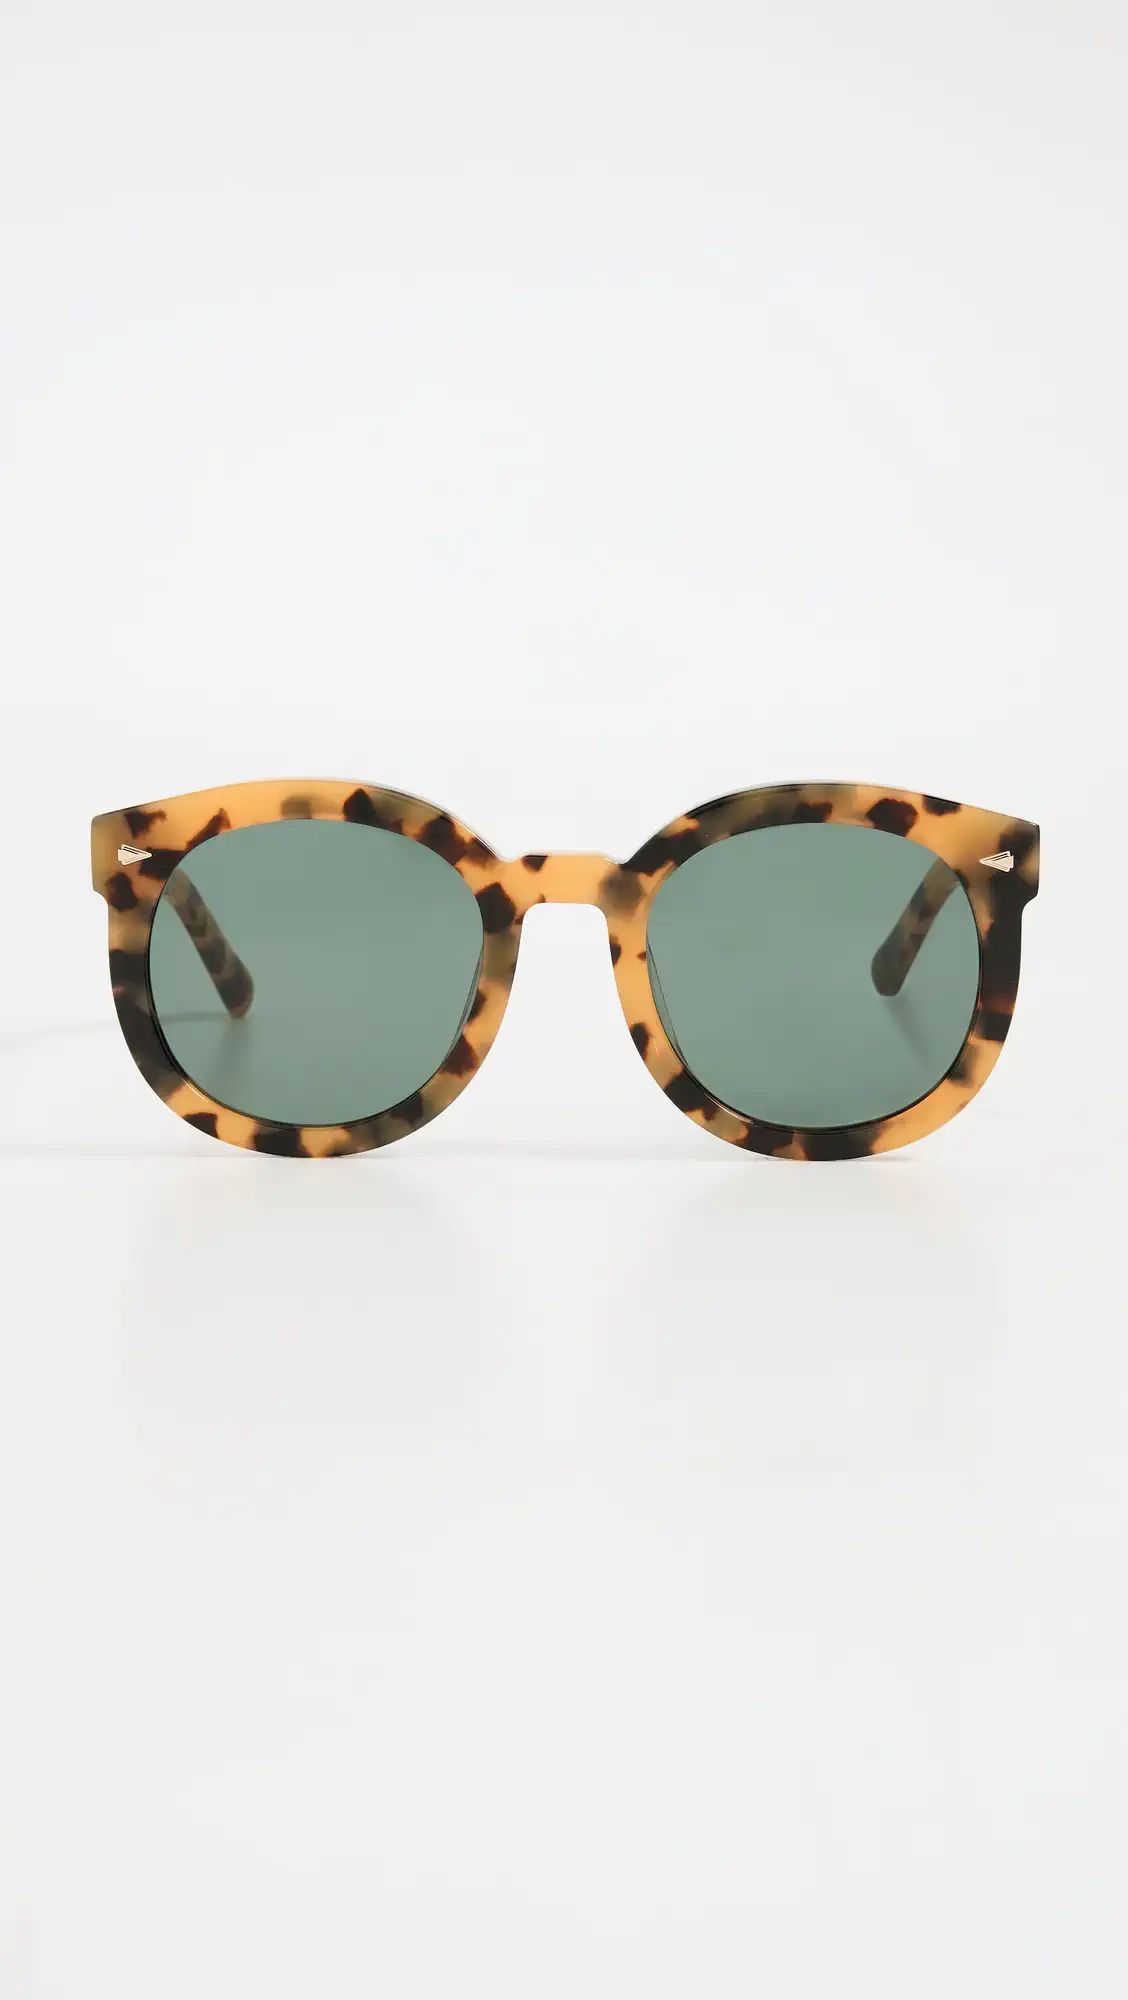 Super Duper Strength 22 B Sunglasses | Shopbop